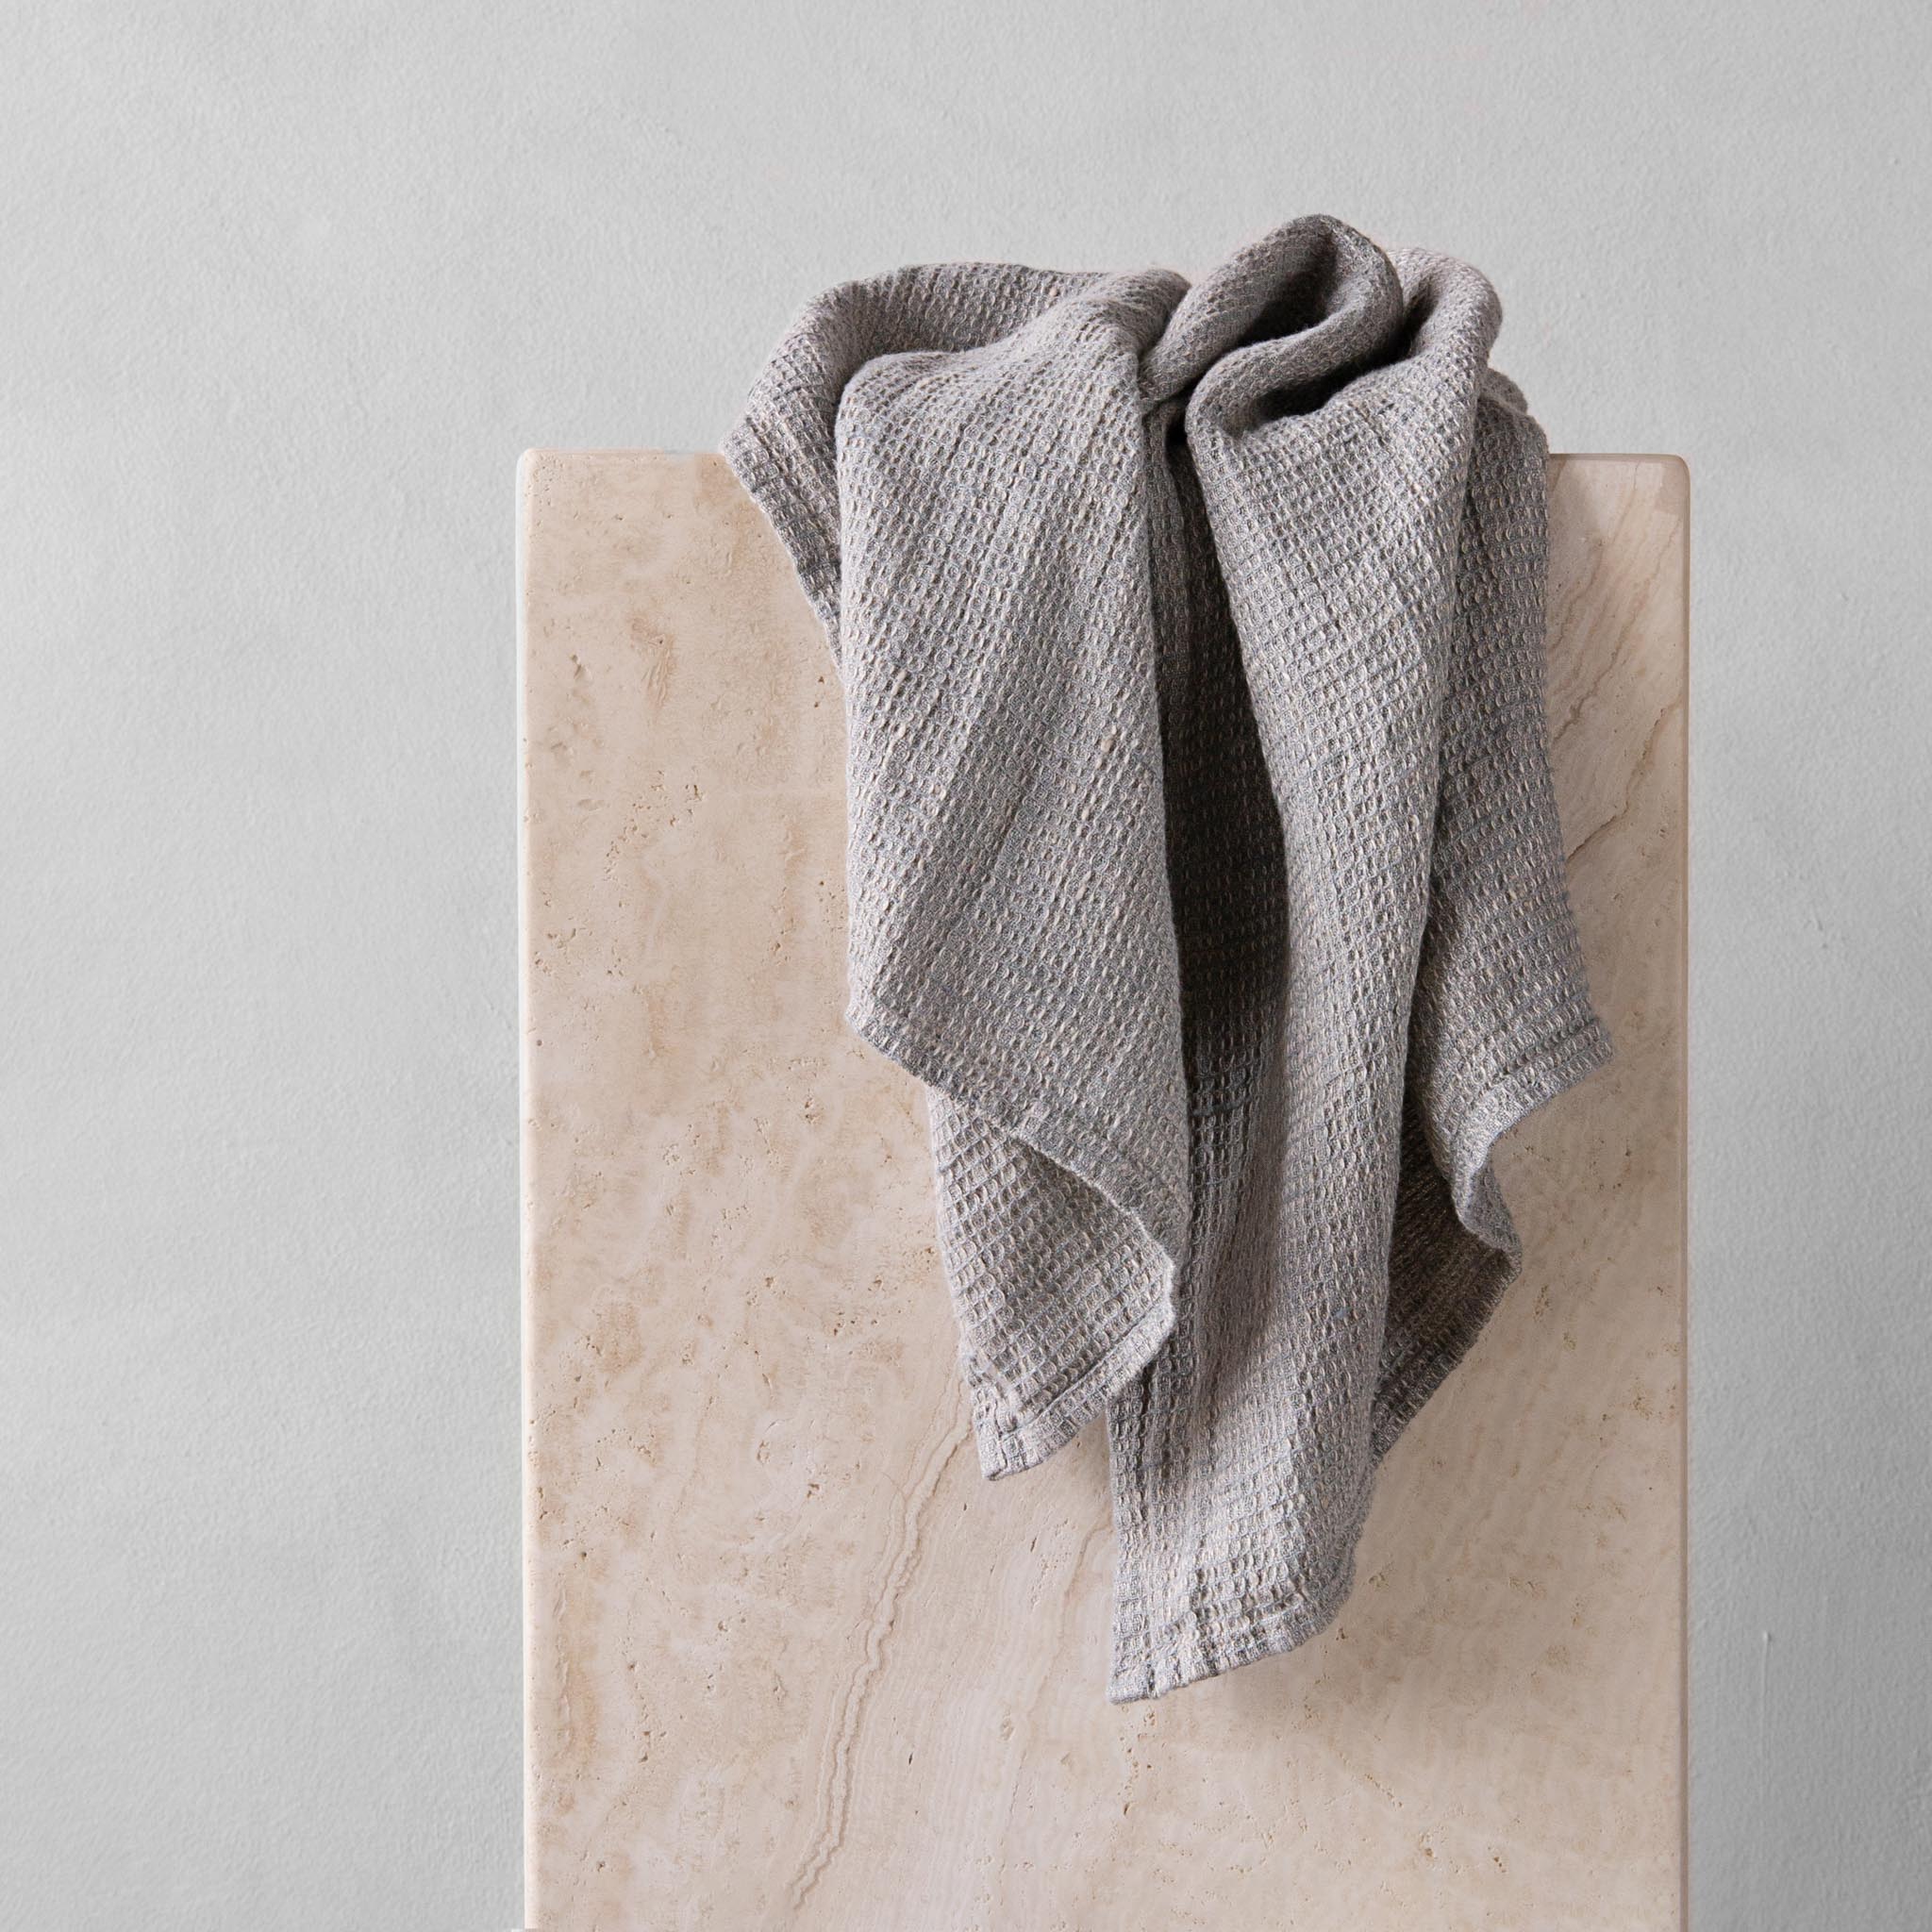 Linen Tea Towels | Cornflower Blue | Hale Mercantile Co.